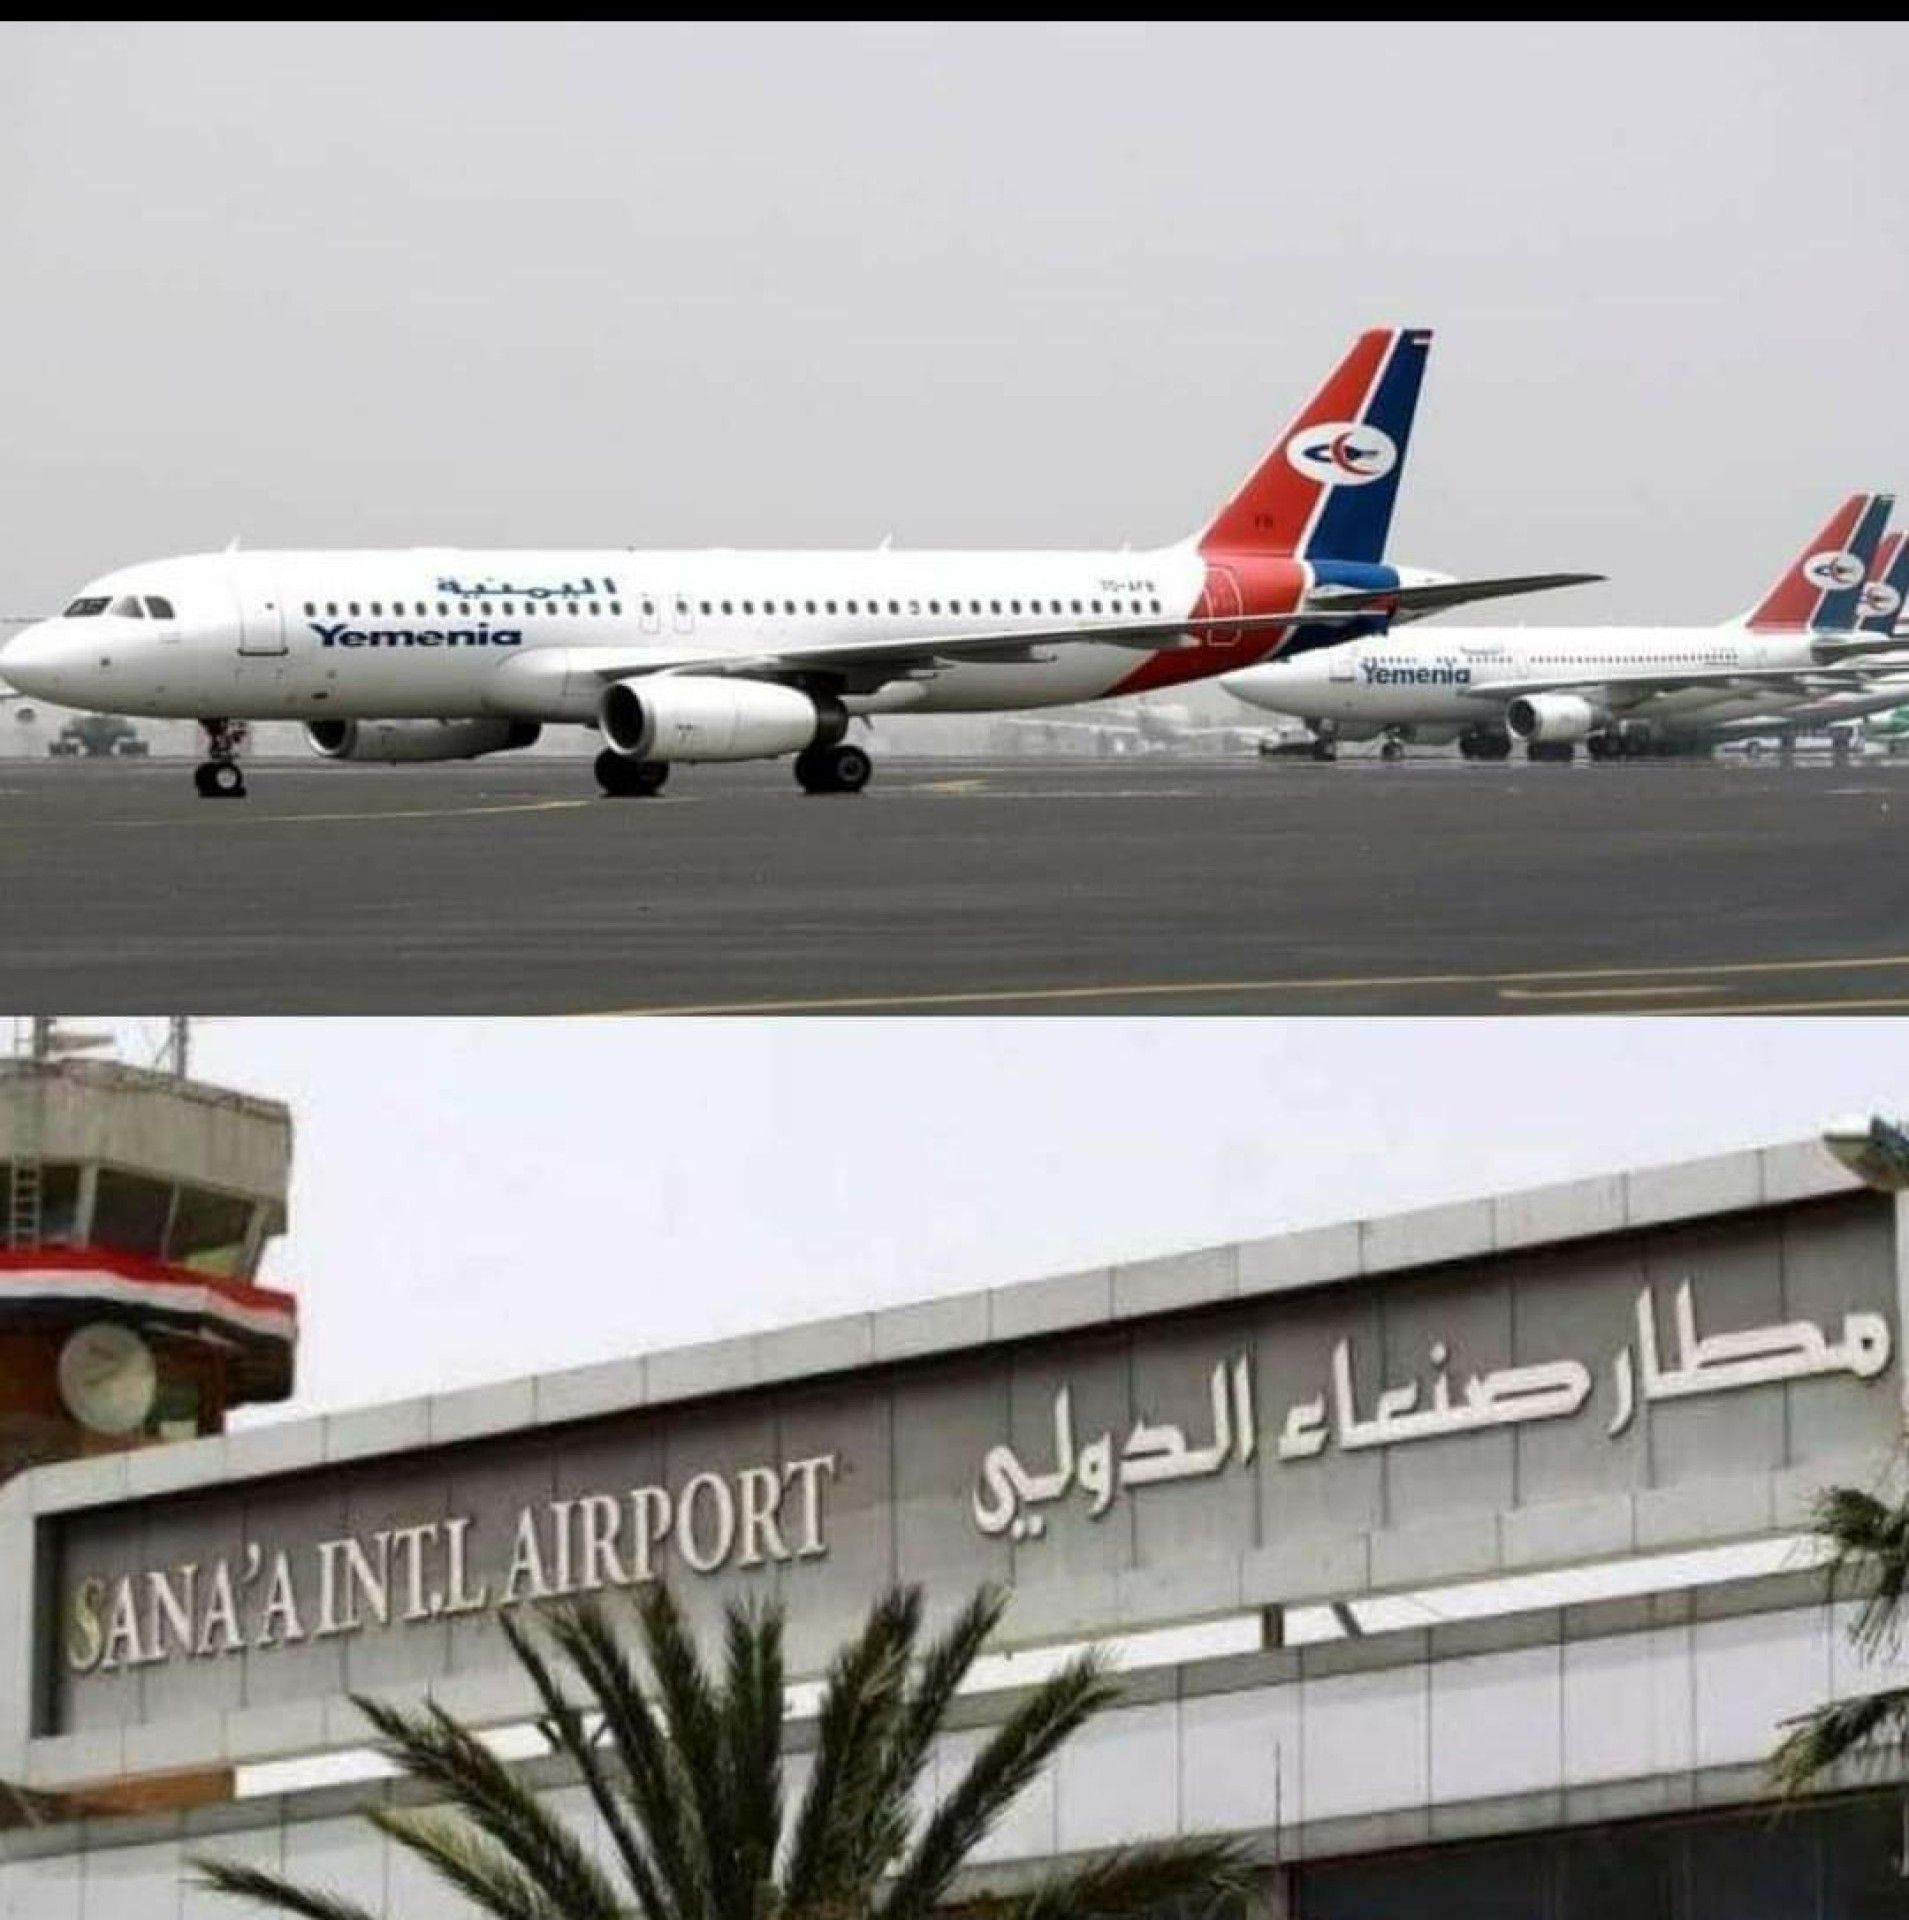 الخطوط الجوية اليمنية تعلن استئناف الرحلات عبر مطار صنعاء الدولي إلى الأردن ابتداءً من يوم غدٍ الخميس